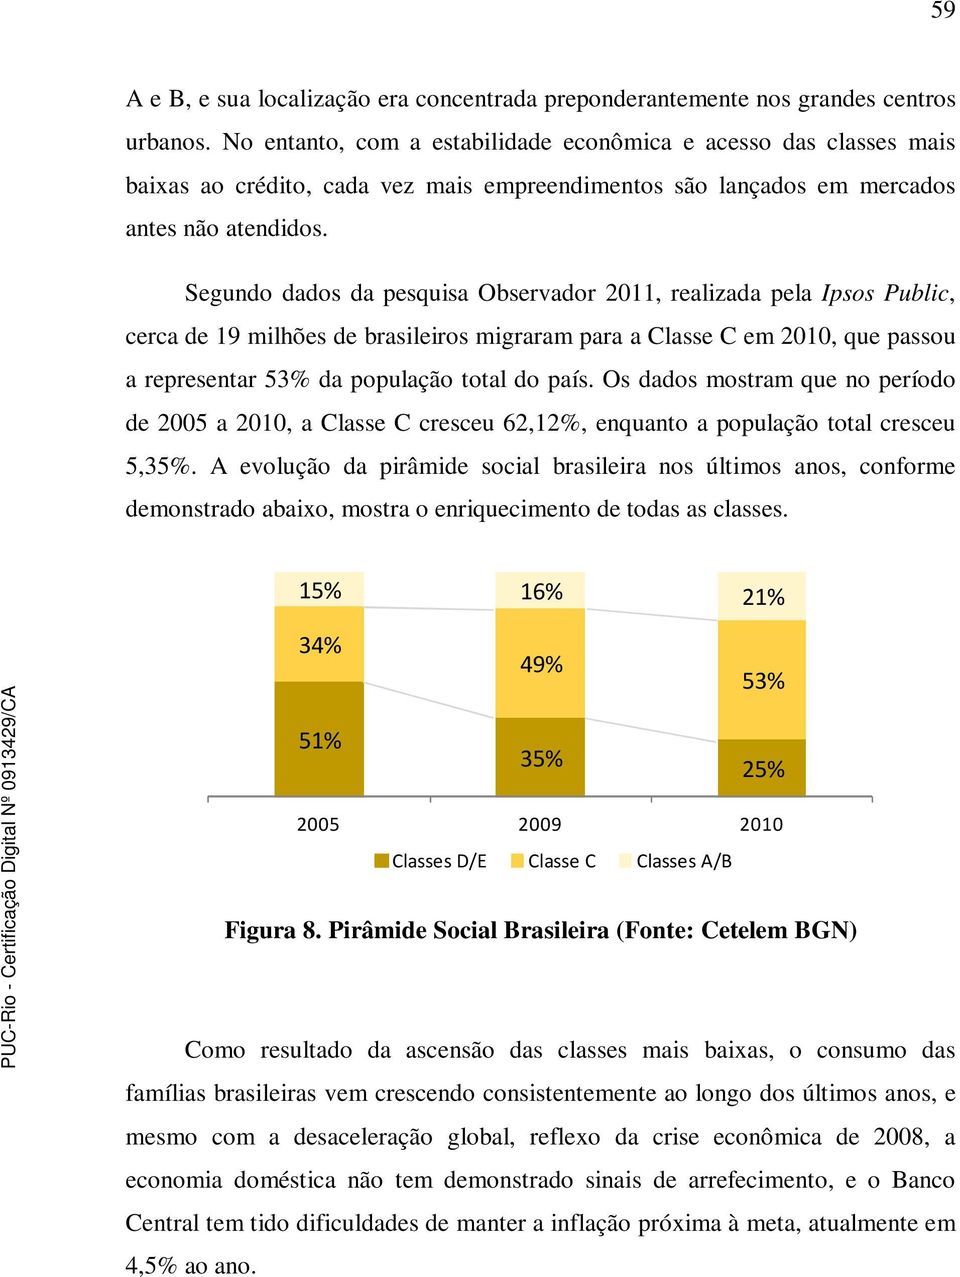 Segundo dados da pesquisa Observador 2011, realizada pela Ipsos Public, cerca de 19 milhões de brasileiros migraram para a Classe C em 2010, que passou a representar 53% da população total do país.